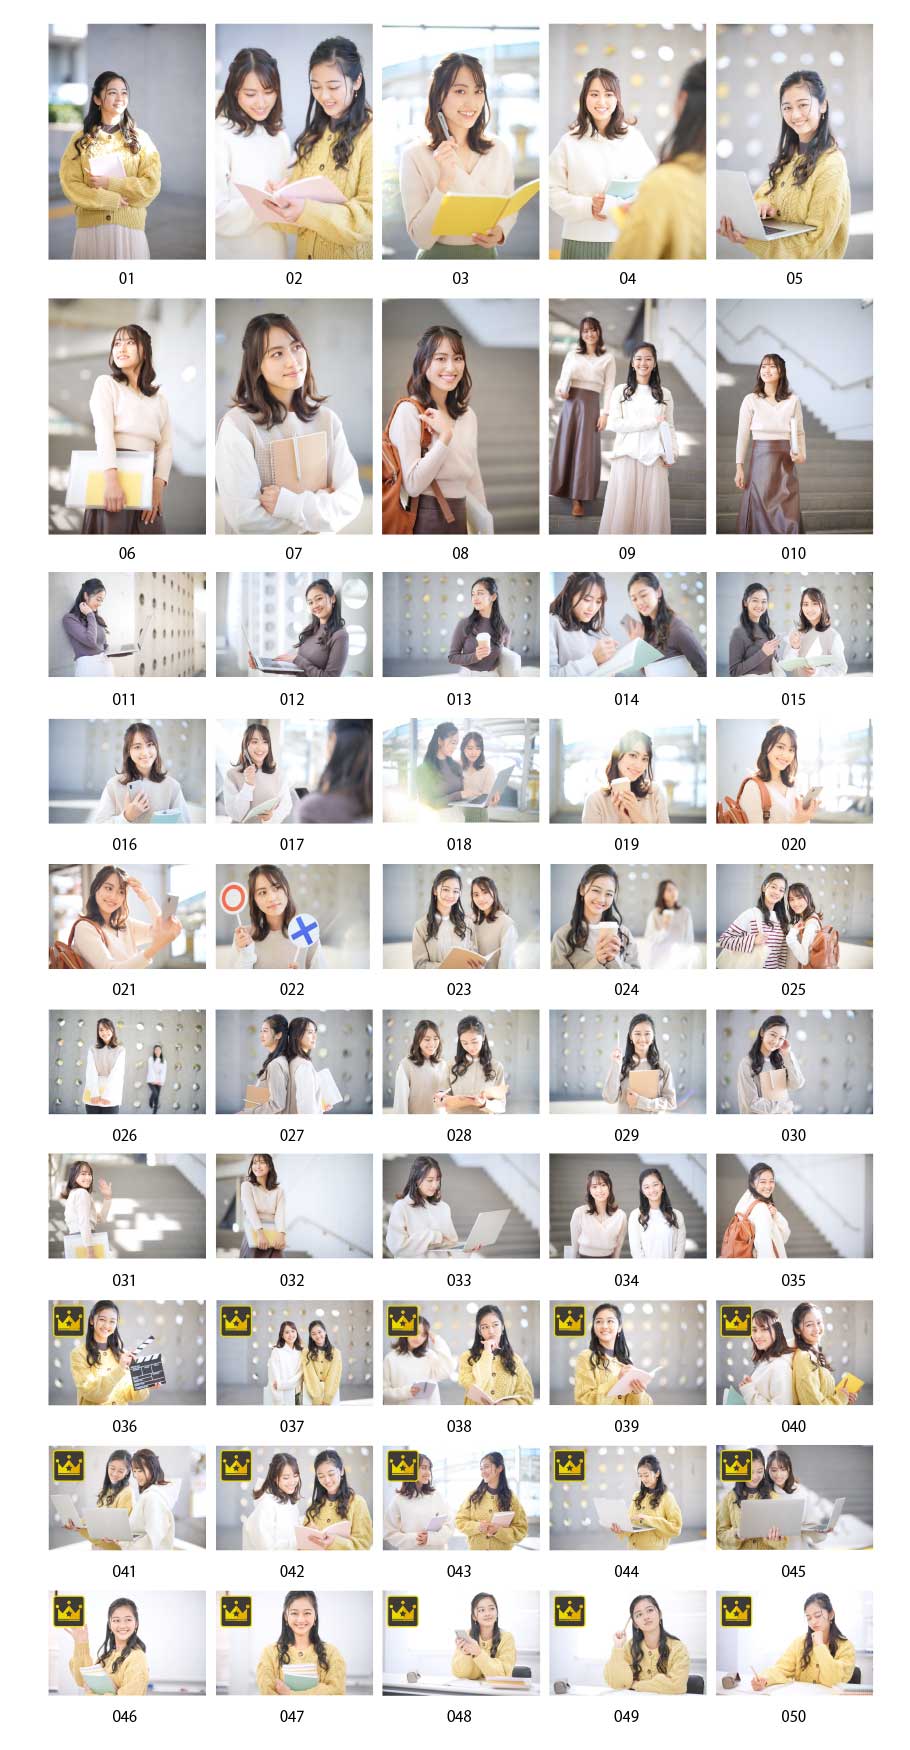 รูปถ่ายของนักศึกษาหญิงชาวญี่ปุ่น